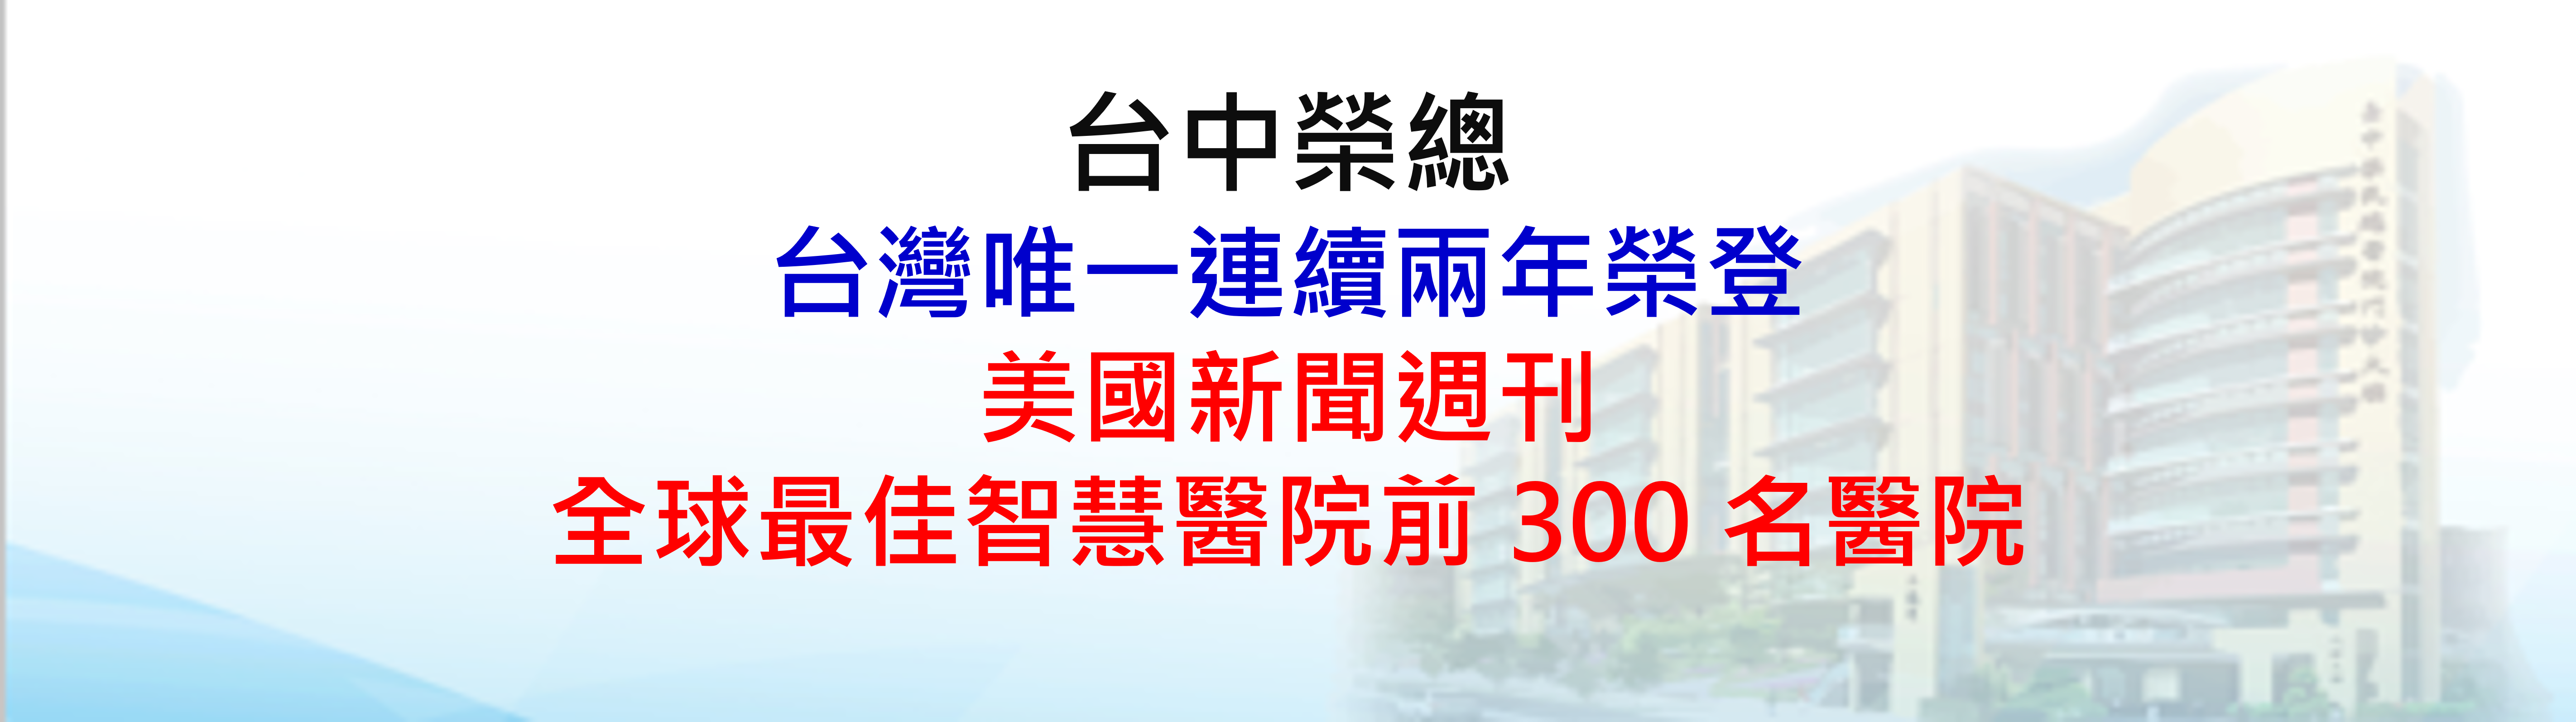 台中榮總為台灣唯一連續兩年榮登美國新聞週刊全球最佳智慧醫院前 300 名醫院